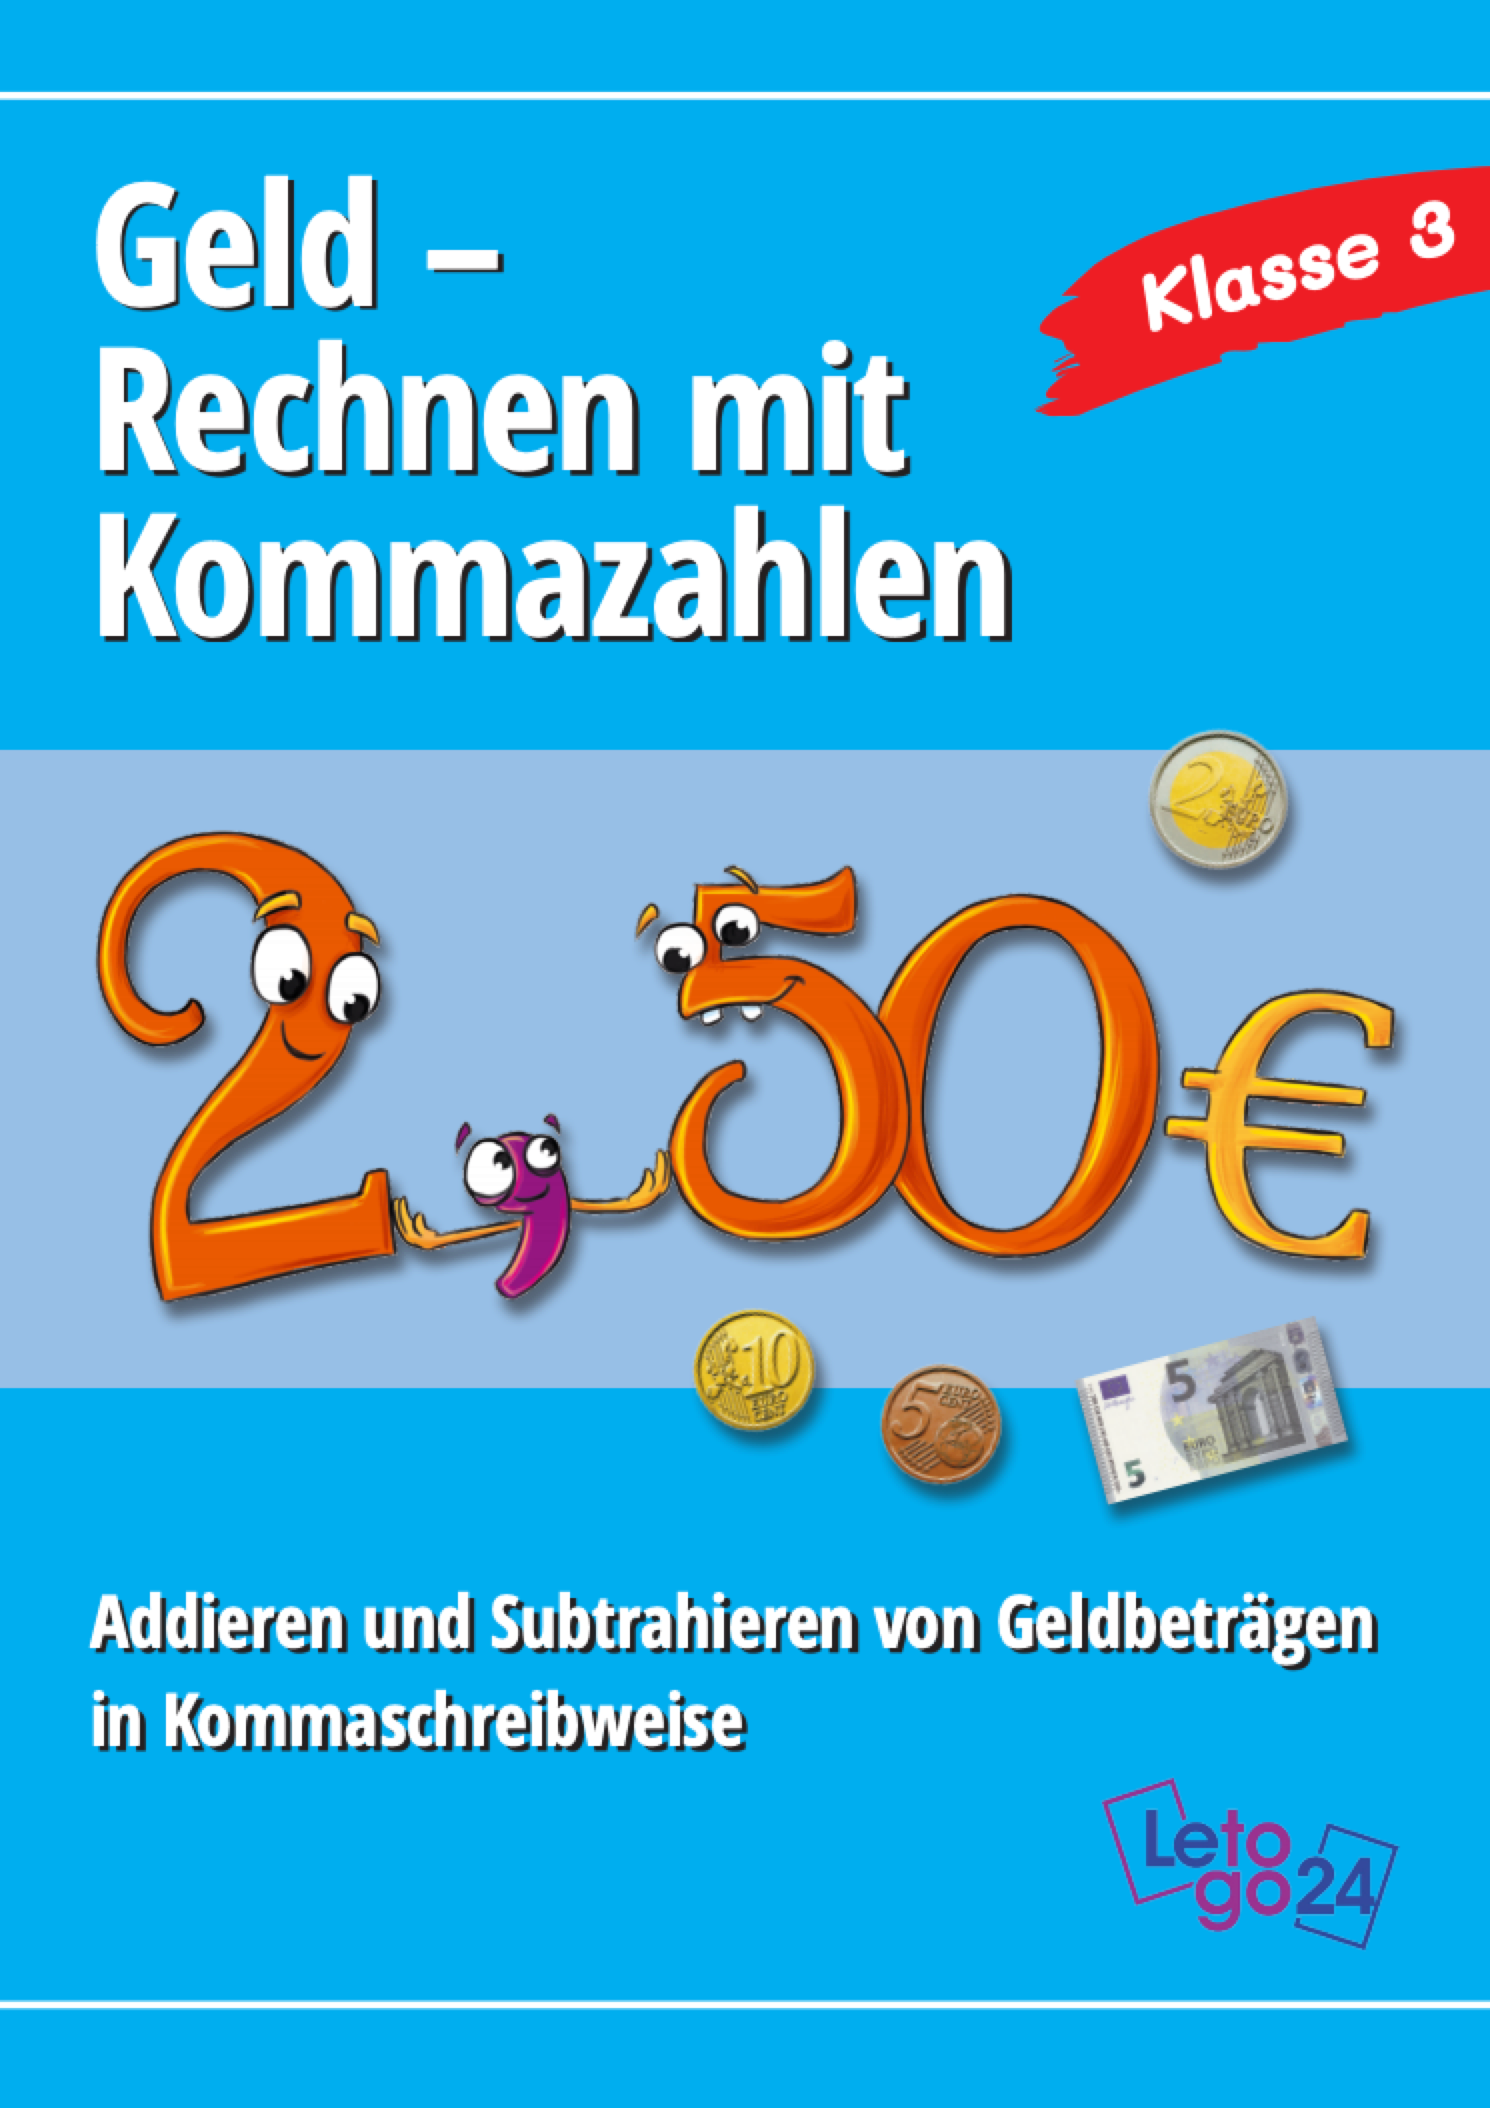 Coverbild des E-Books `Geld -Rechnen mit Kommazahlen`mit Münzen, einem Geldschein und eines personifizierten Preises